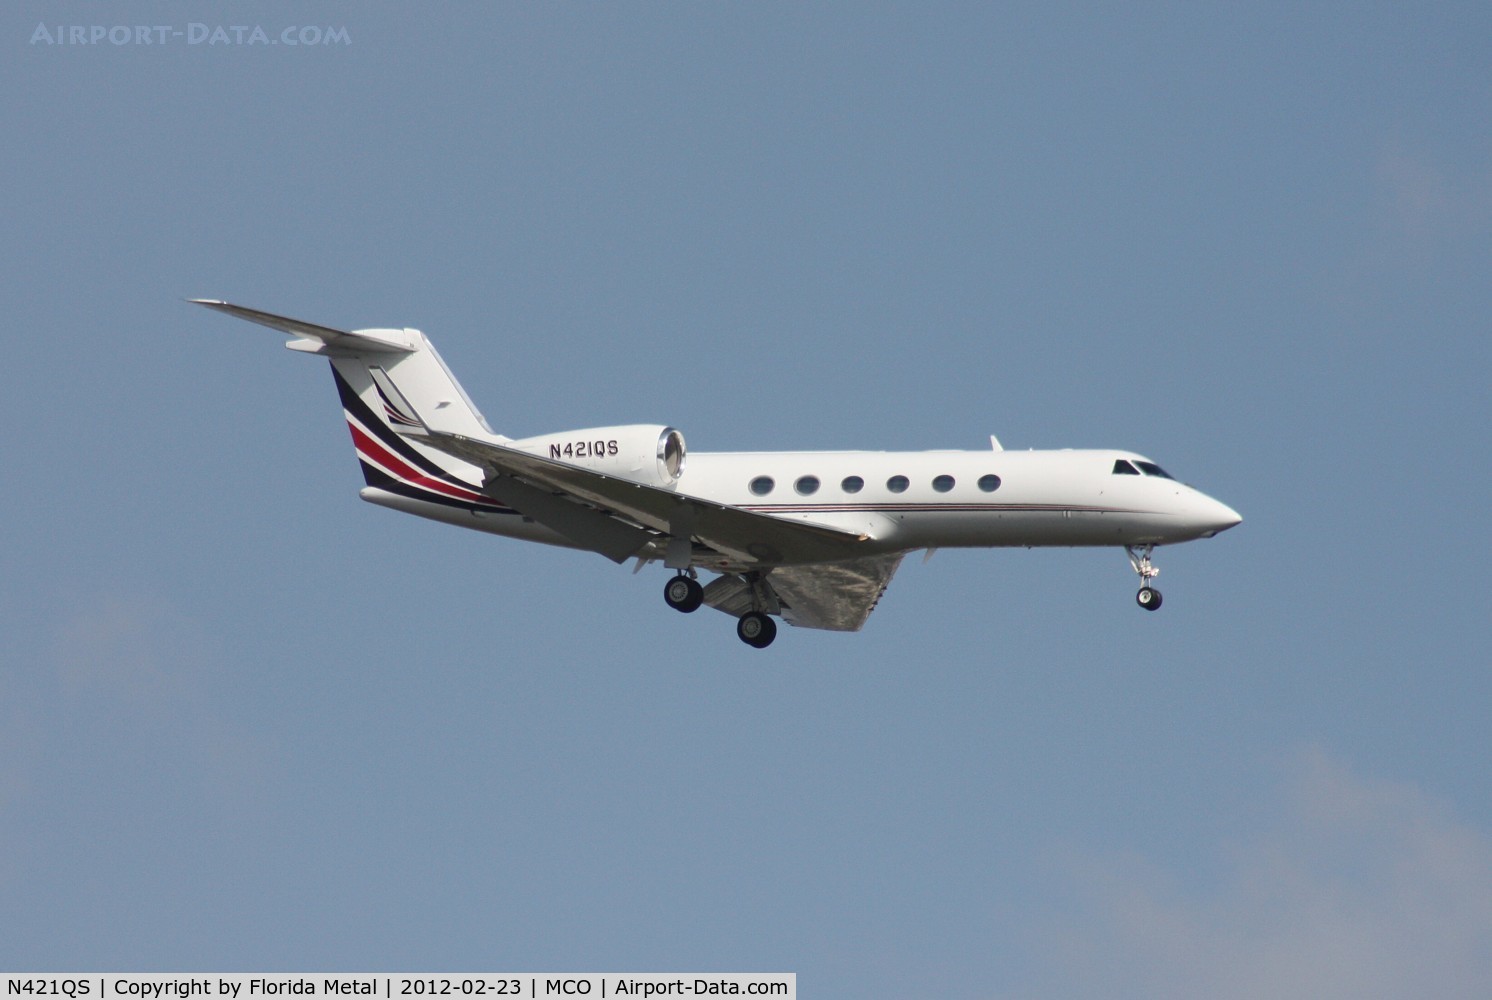 N421QS, 2008 Gulfstream Aerospace GIV-X (G450) C/N 4114, Net Jets G450